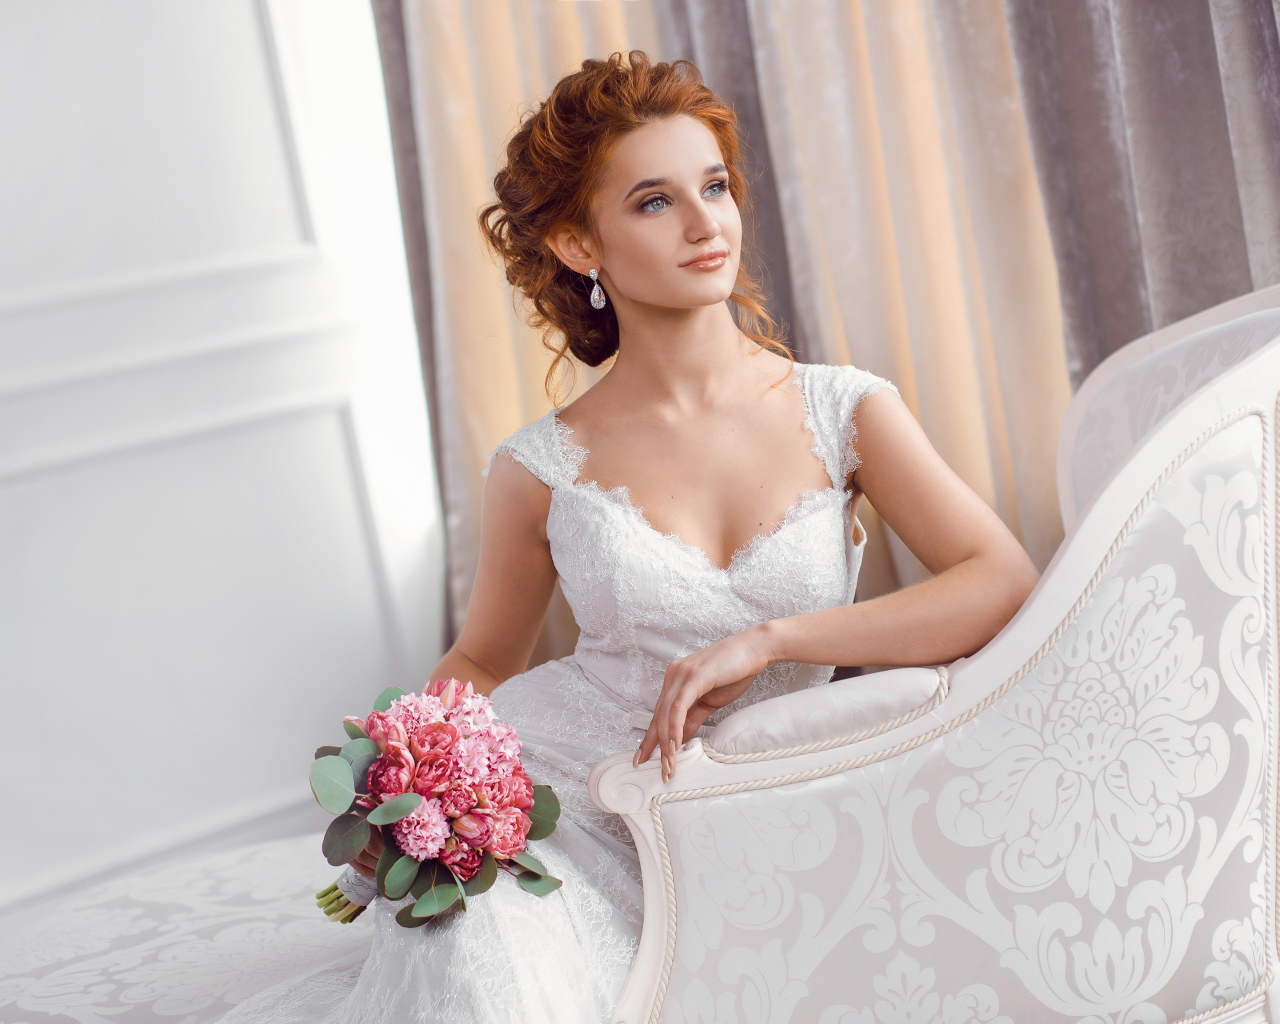 Красивая рыжеволосая девушка невеста в красивом свадебном платье